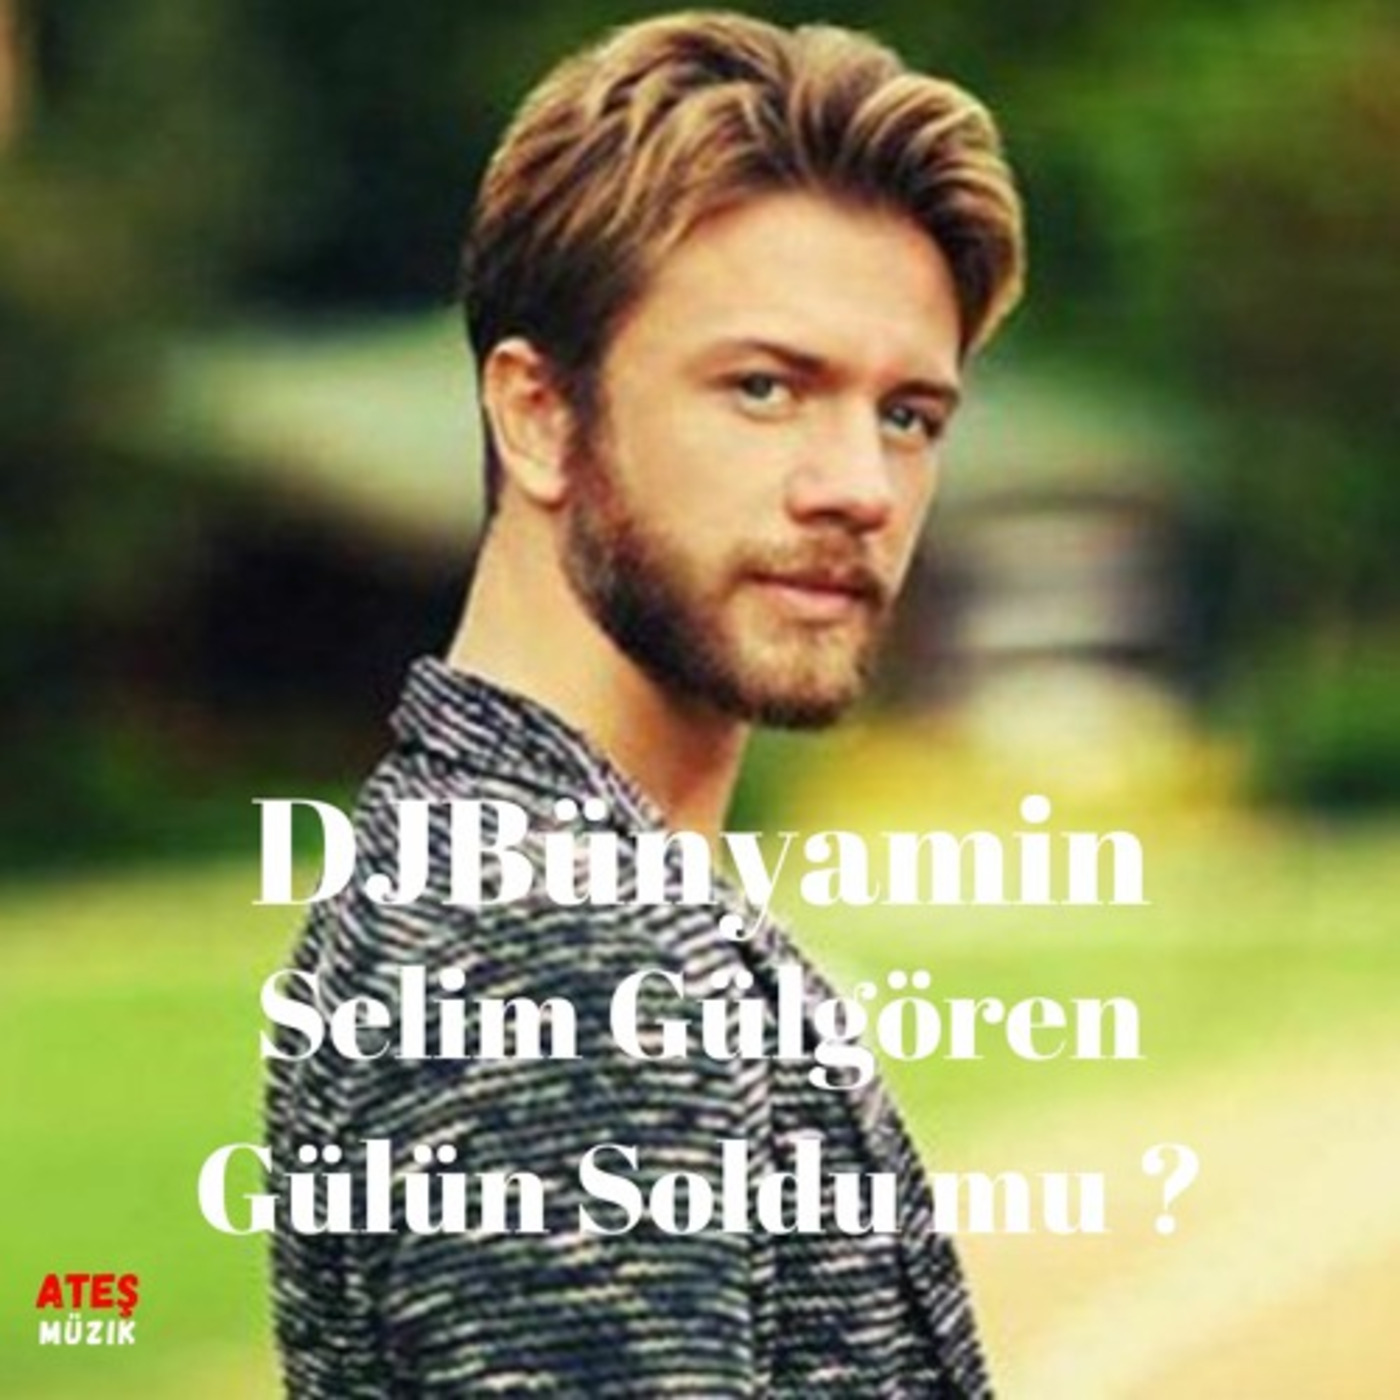 Selim Gülgören -- Gülün Soldu mu ? REMIX 2019 (Official Remix)